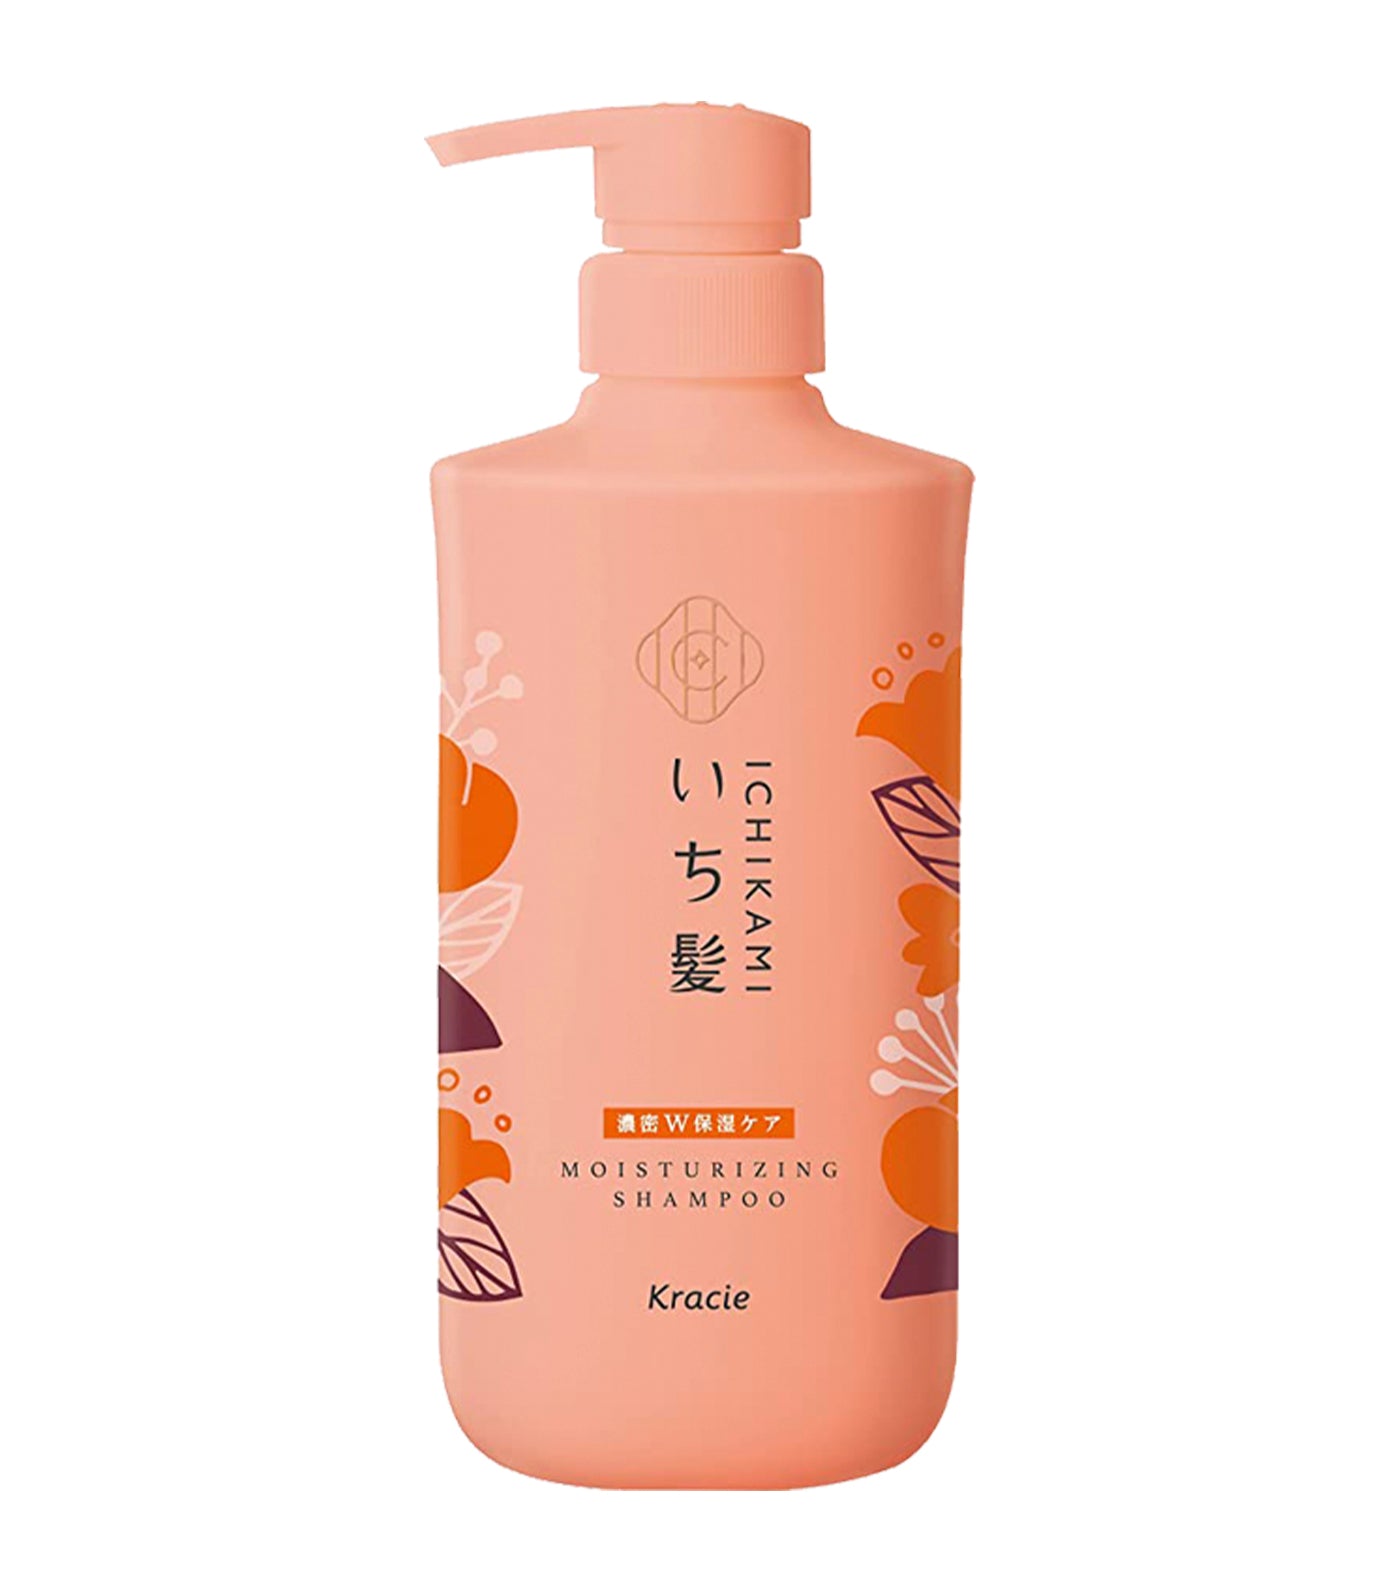 Ichikami Moisturizing Shampoo